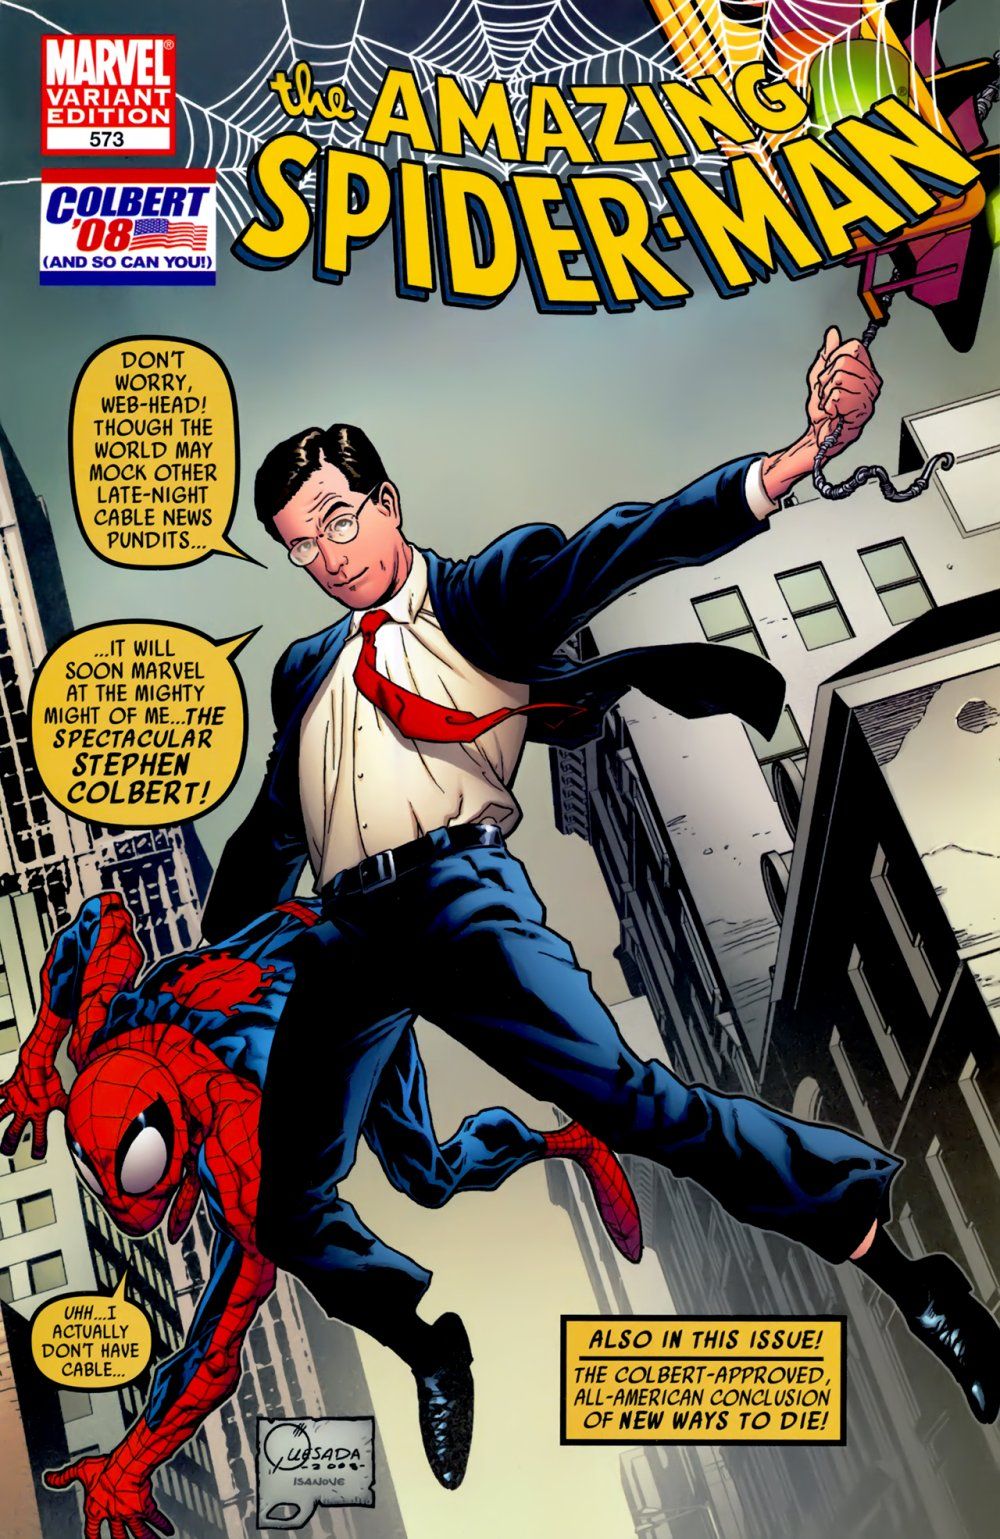 Stephen Colbert di komik Spider-Man